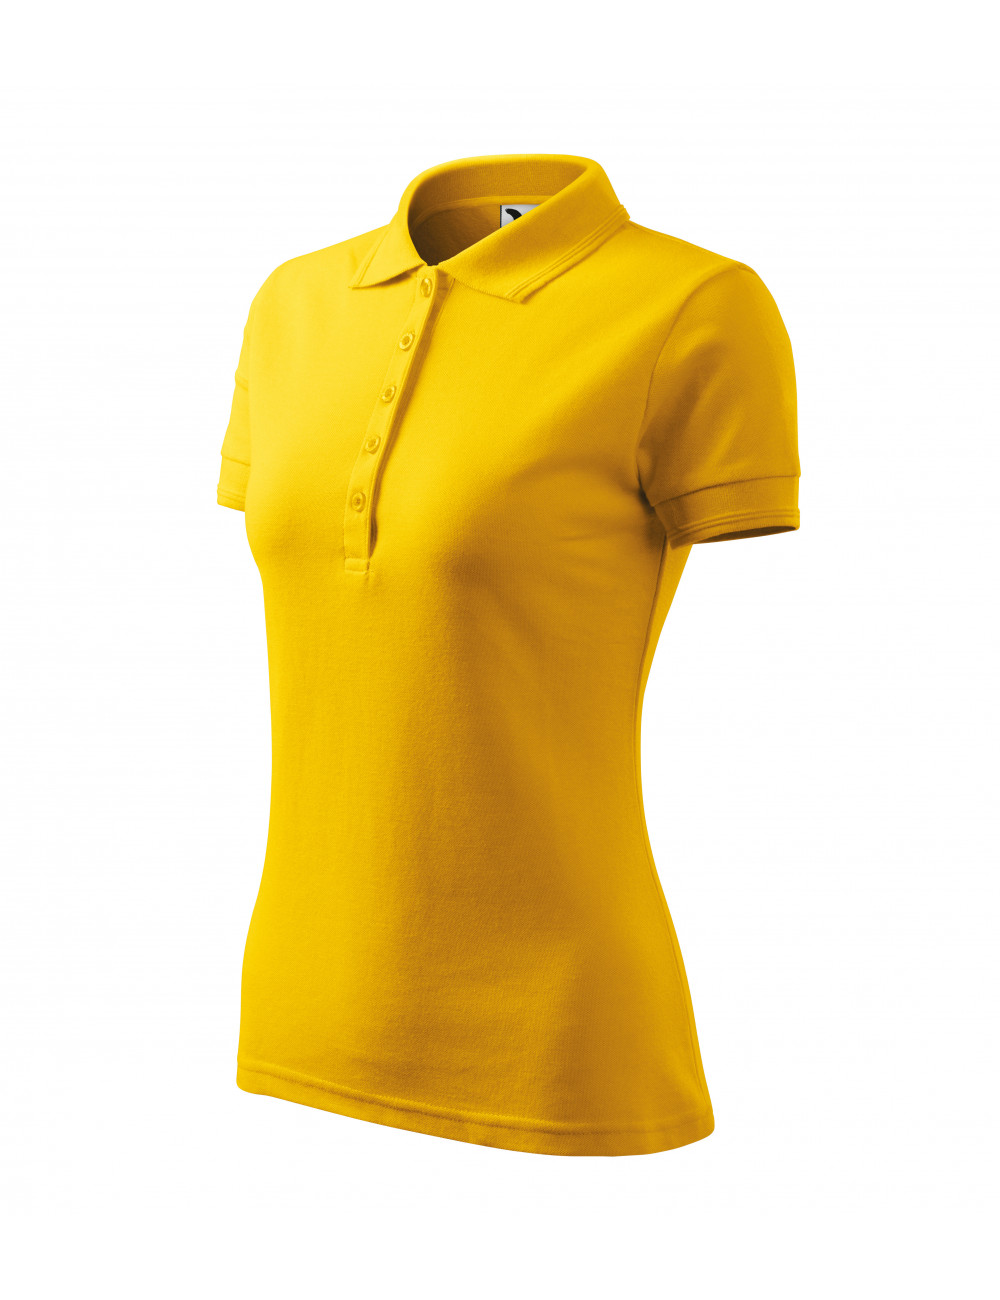 Damen-Poloshirt Pique Polo 210 gelb Adler Malfini